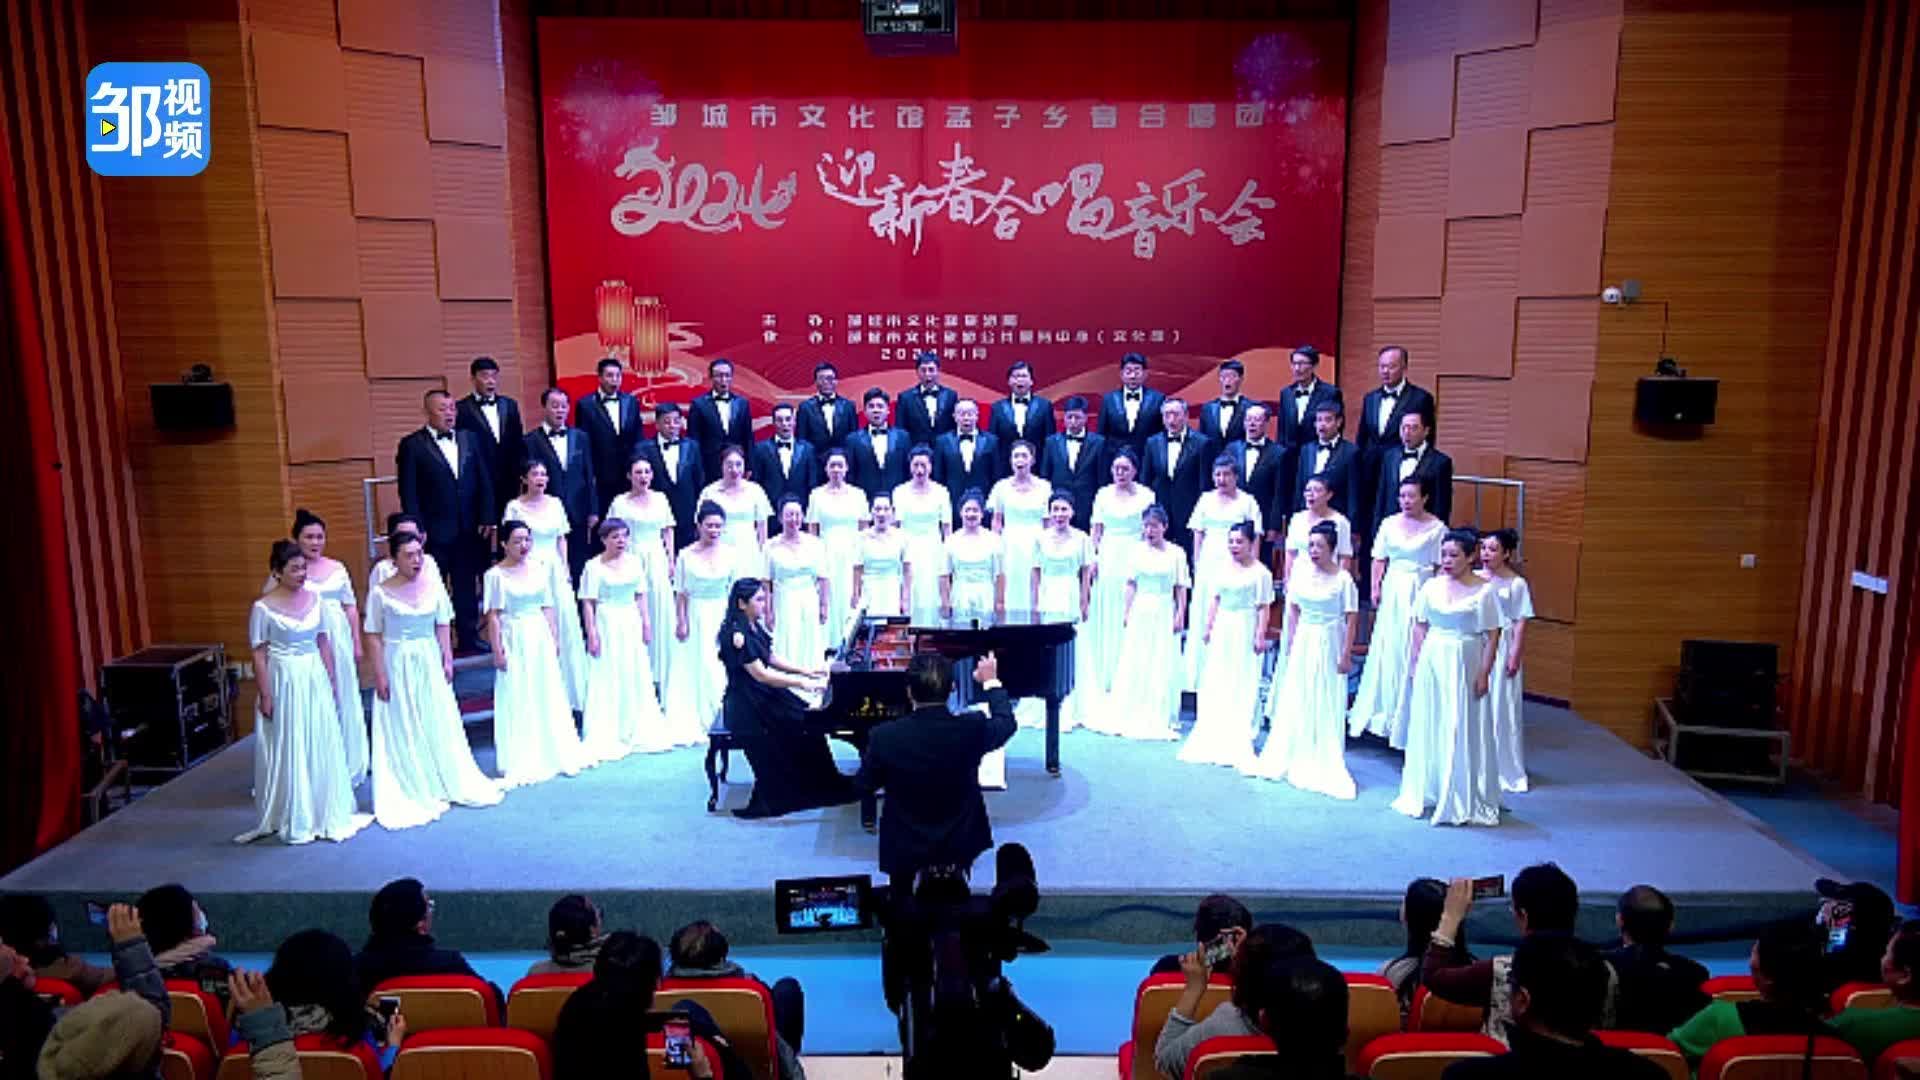 【邹视频·新闻】29秒|孟子乡音合唱团举办迎新春合唱音乐会